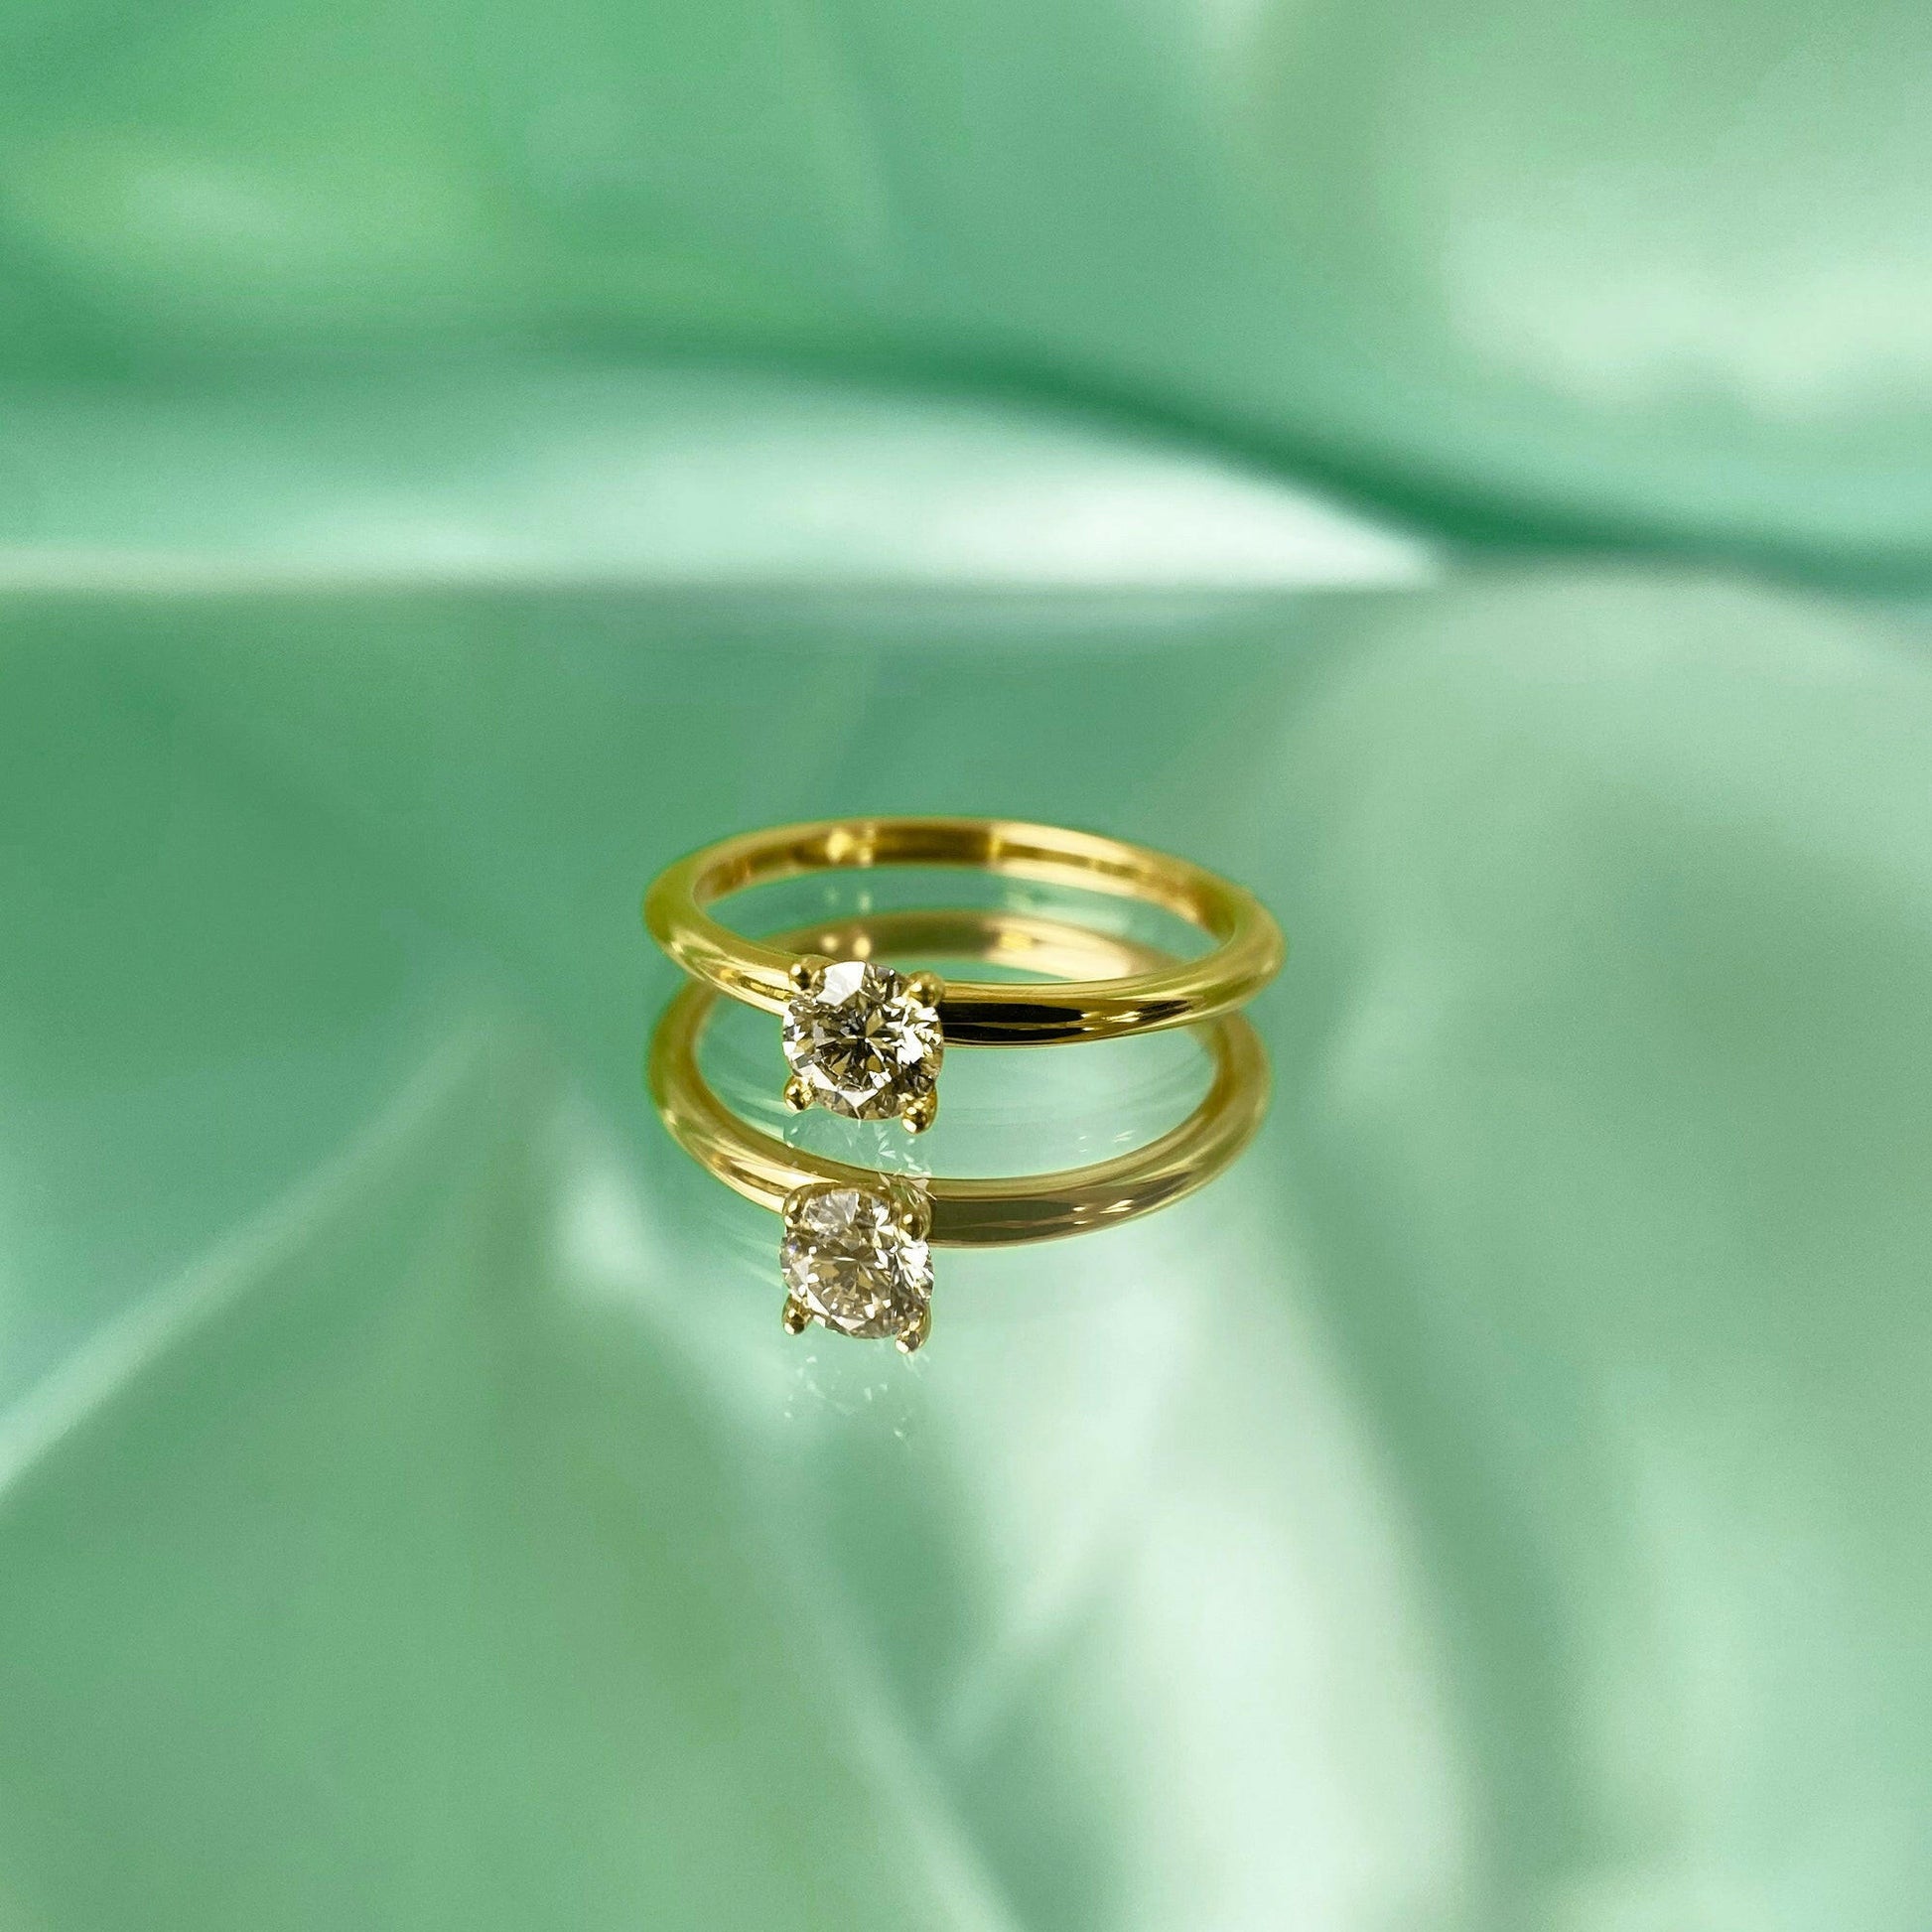 Ring Bella, Solitärring aus Gelbgold mit Diamant 0.3 ct. von The Good Bling online kaufen (Ref. TGB-Bella-Ring-GG-03)